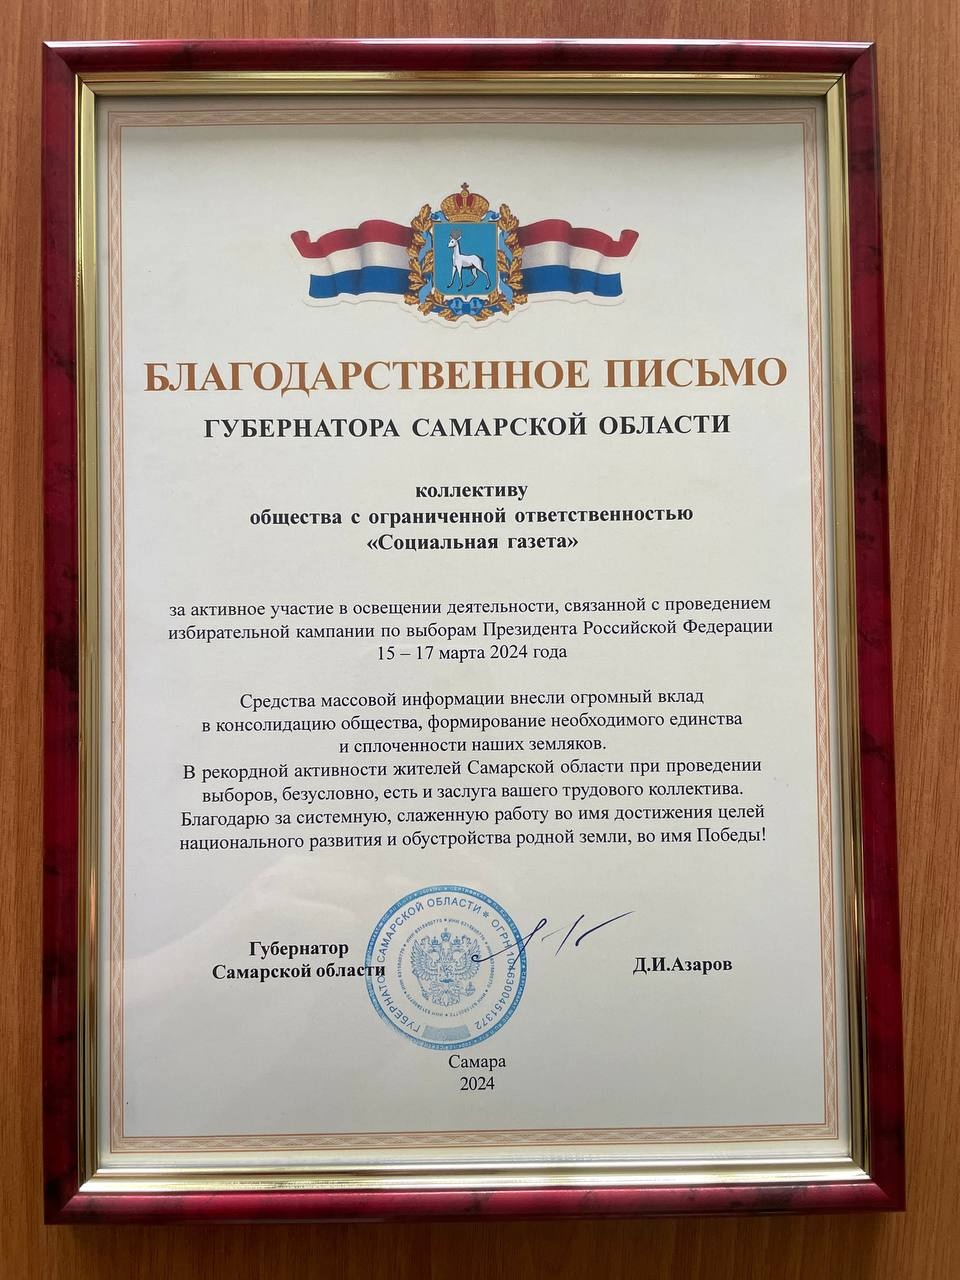 Коллектив «Социалки» получил благодарственное письмо от губернатора Самарской области Дмитрия Азарова